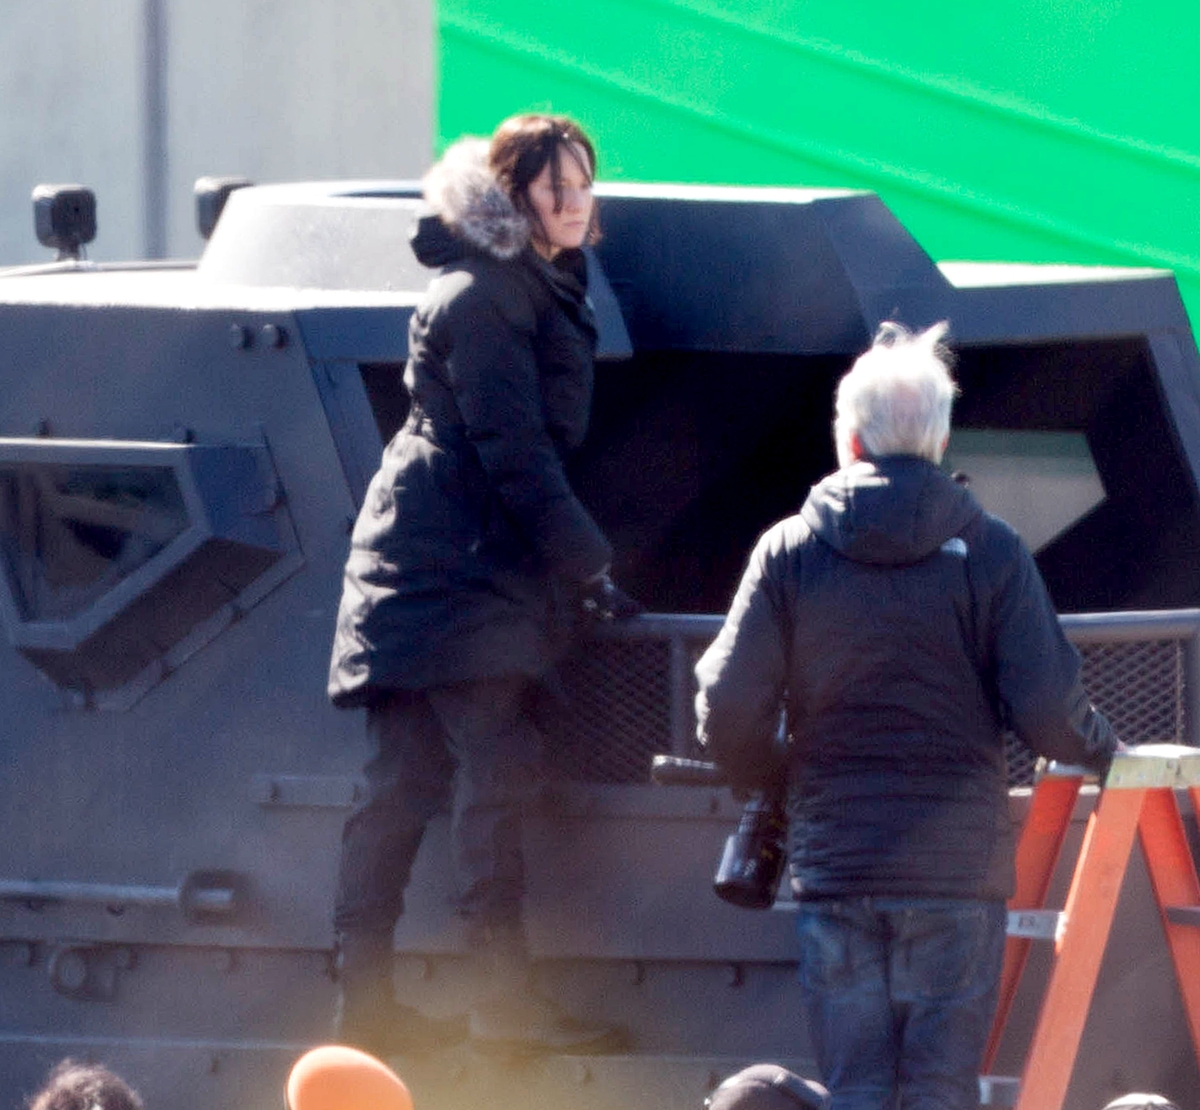 Дженнифер Лоуренс со своим дублером на съемках фильма «Голодные игры: Сойка-пересмешница. Часть II»